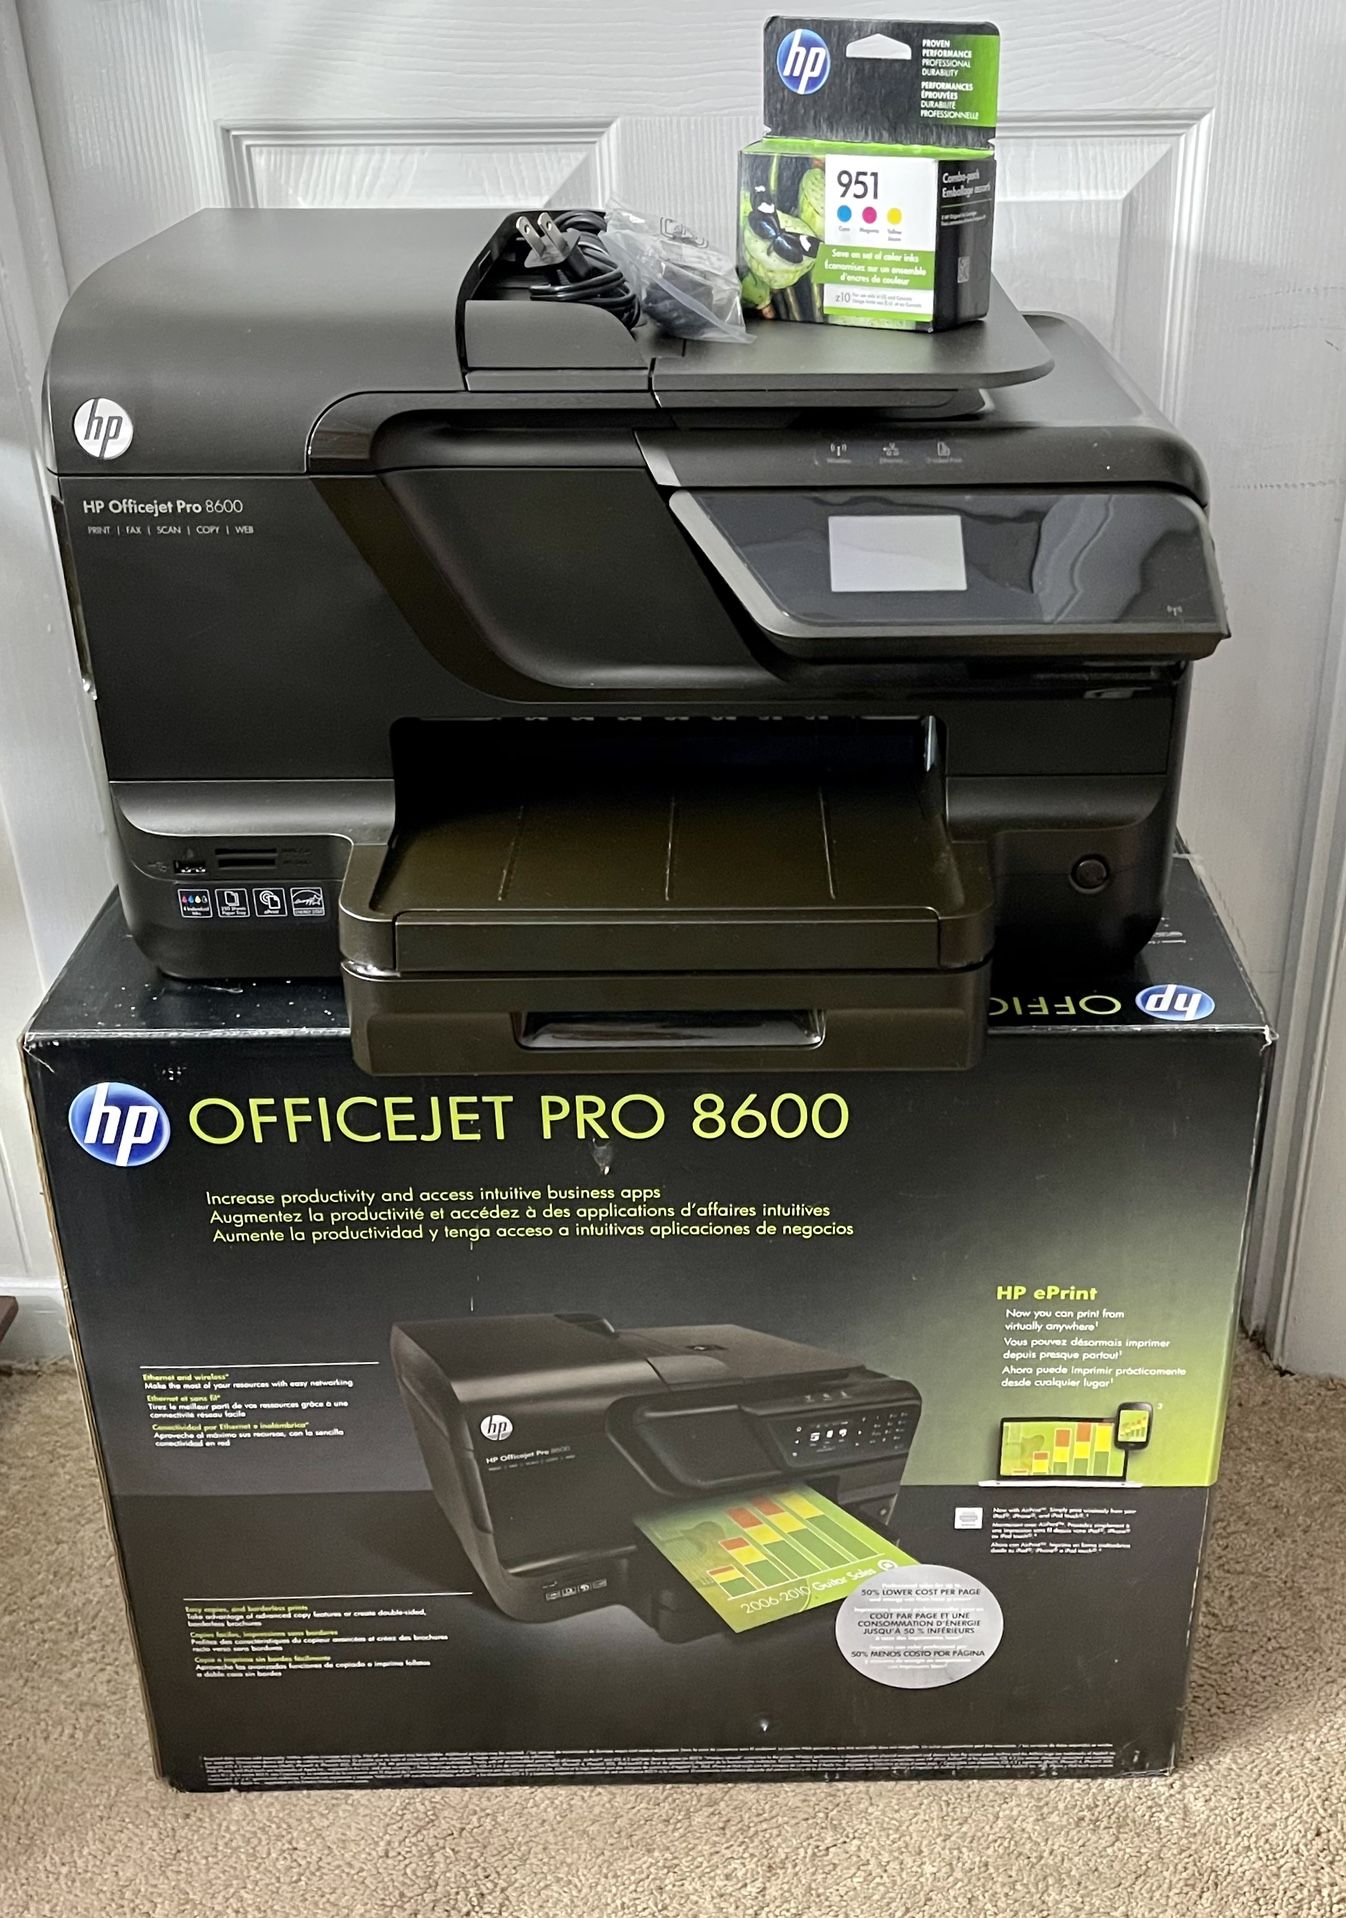 HP Officejet Pro 8600 All-in-One Wireless Printer